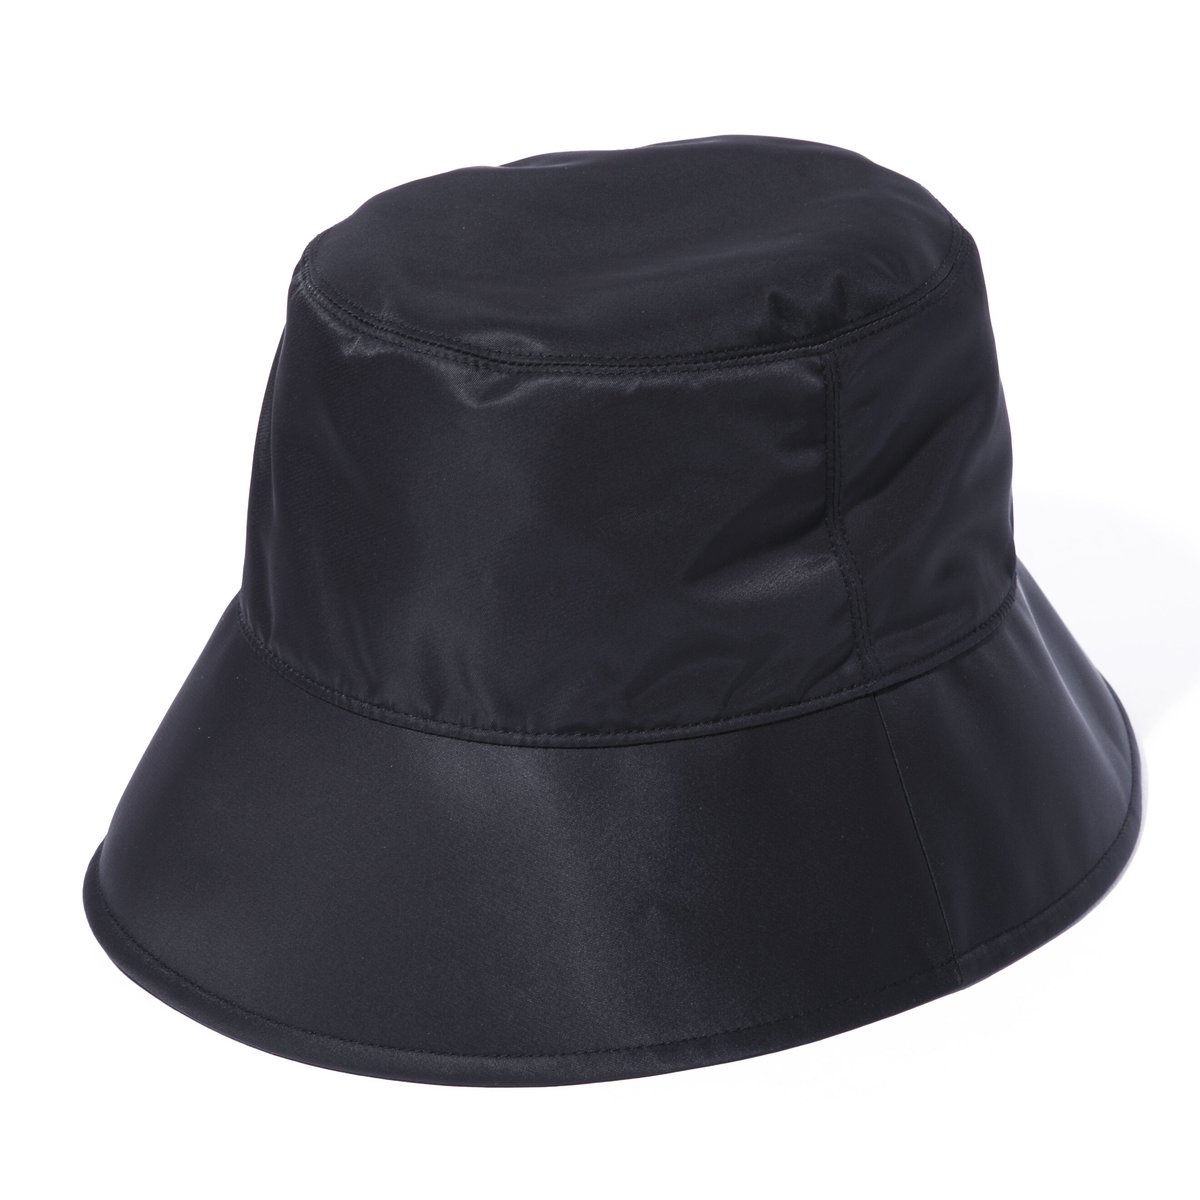 flute hat / black | IRIS47 official online store